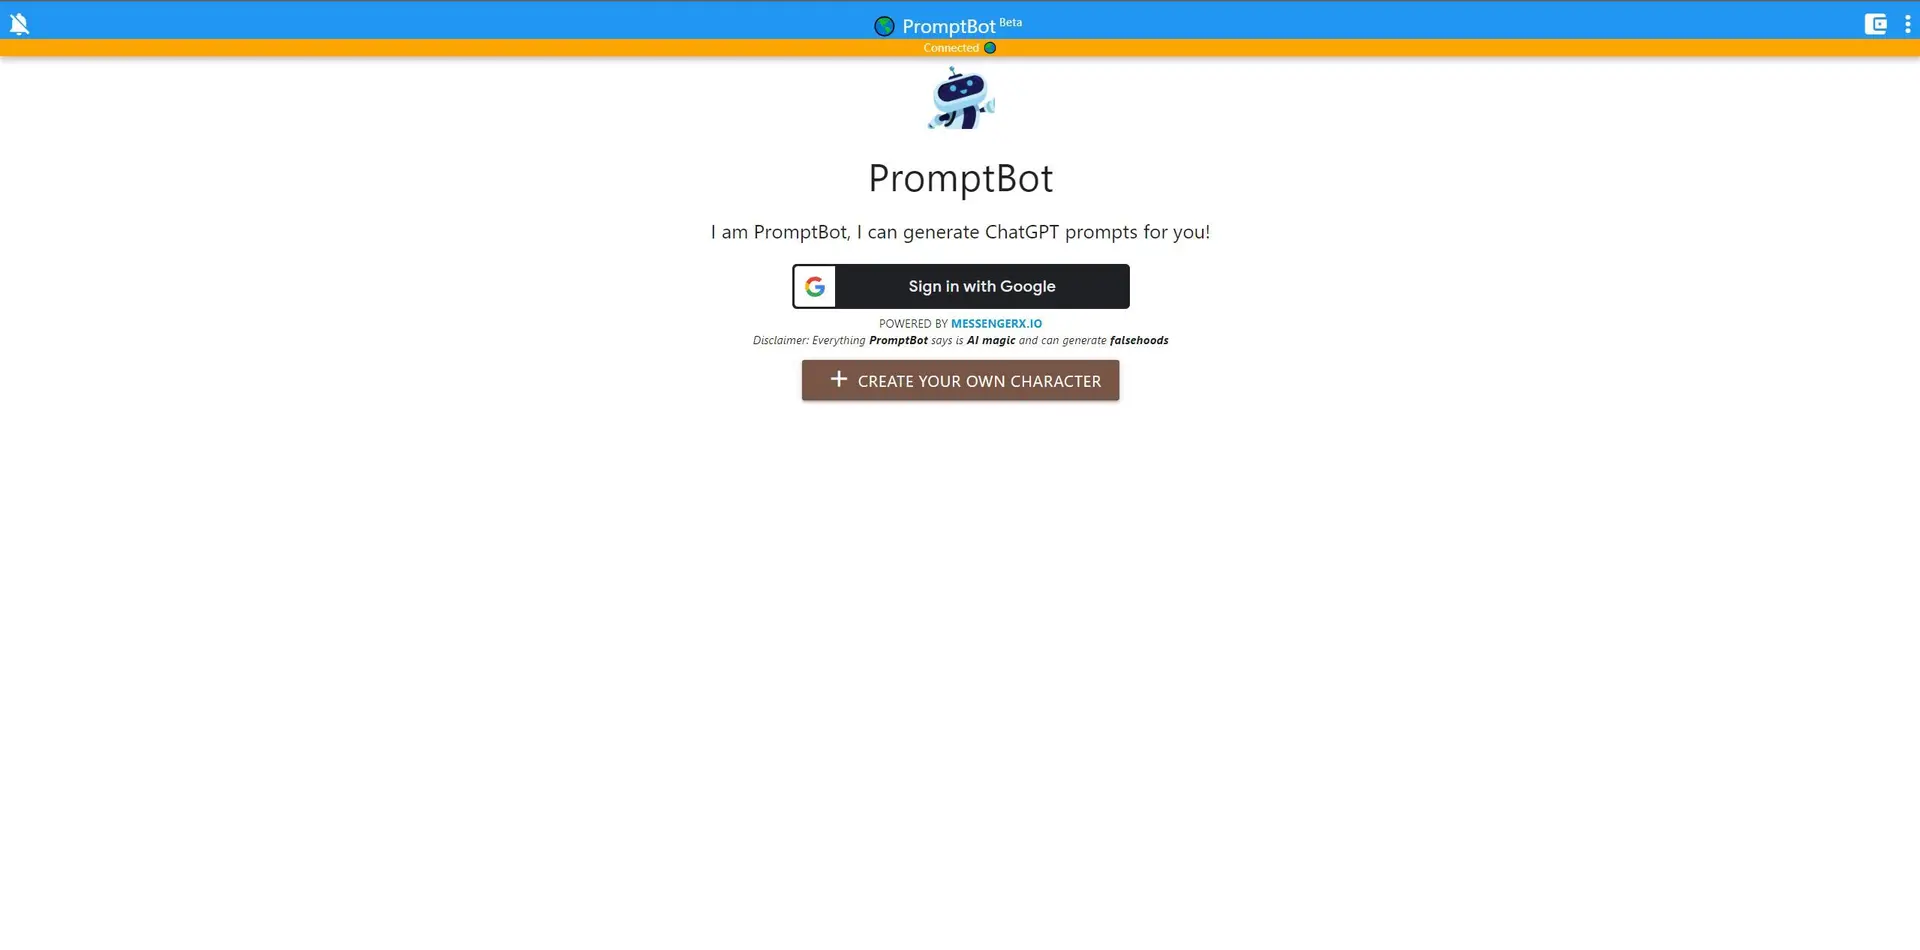 PromptBotwebsite picture